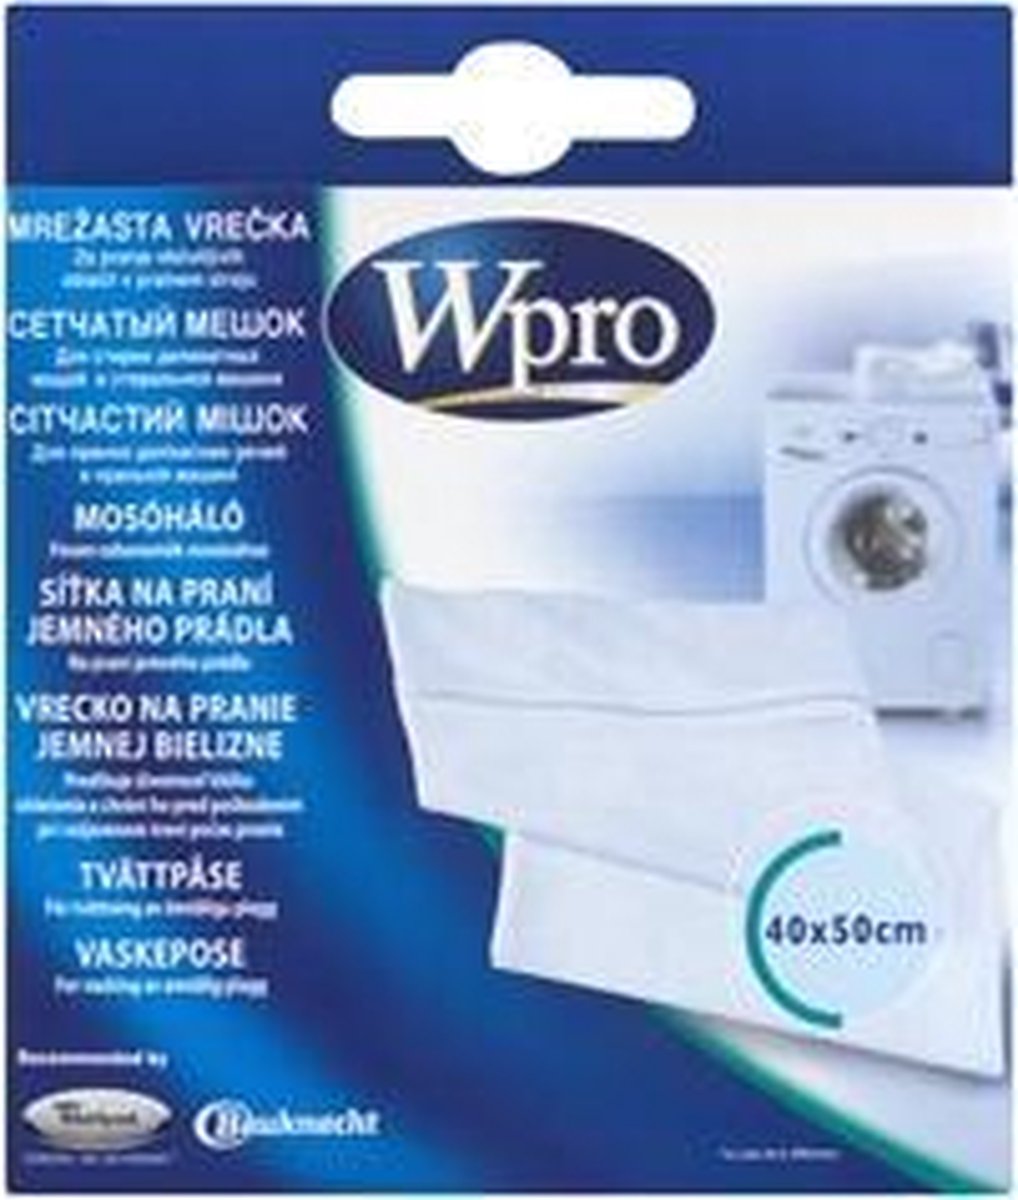 Wpro wasnet/zak - 40x50